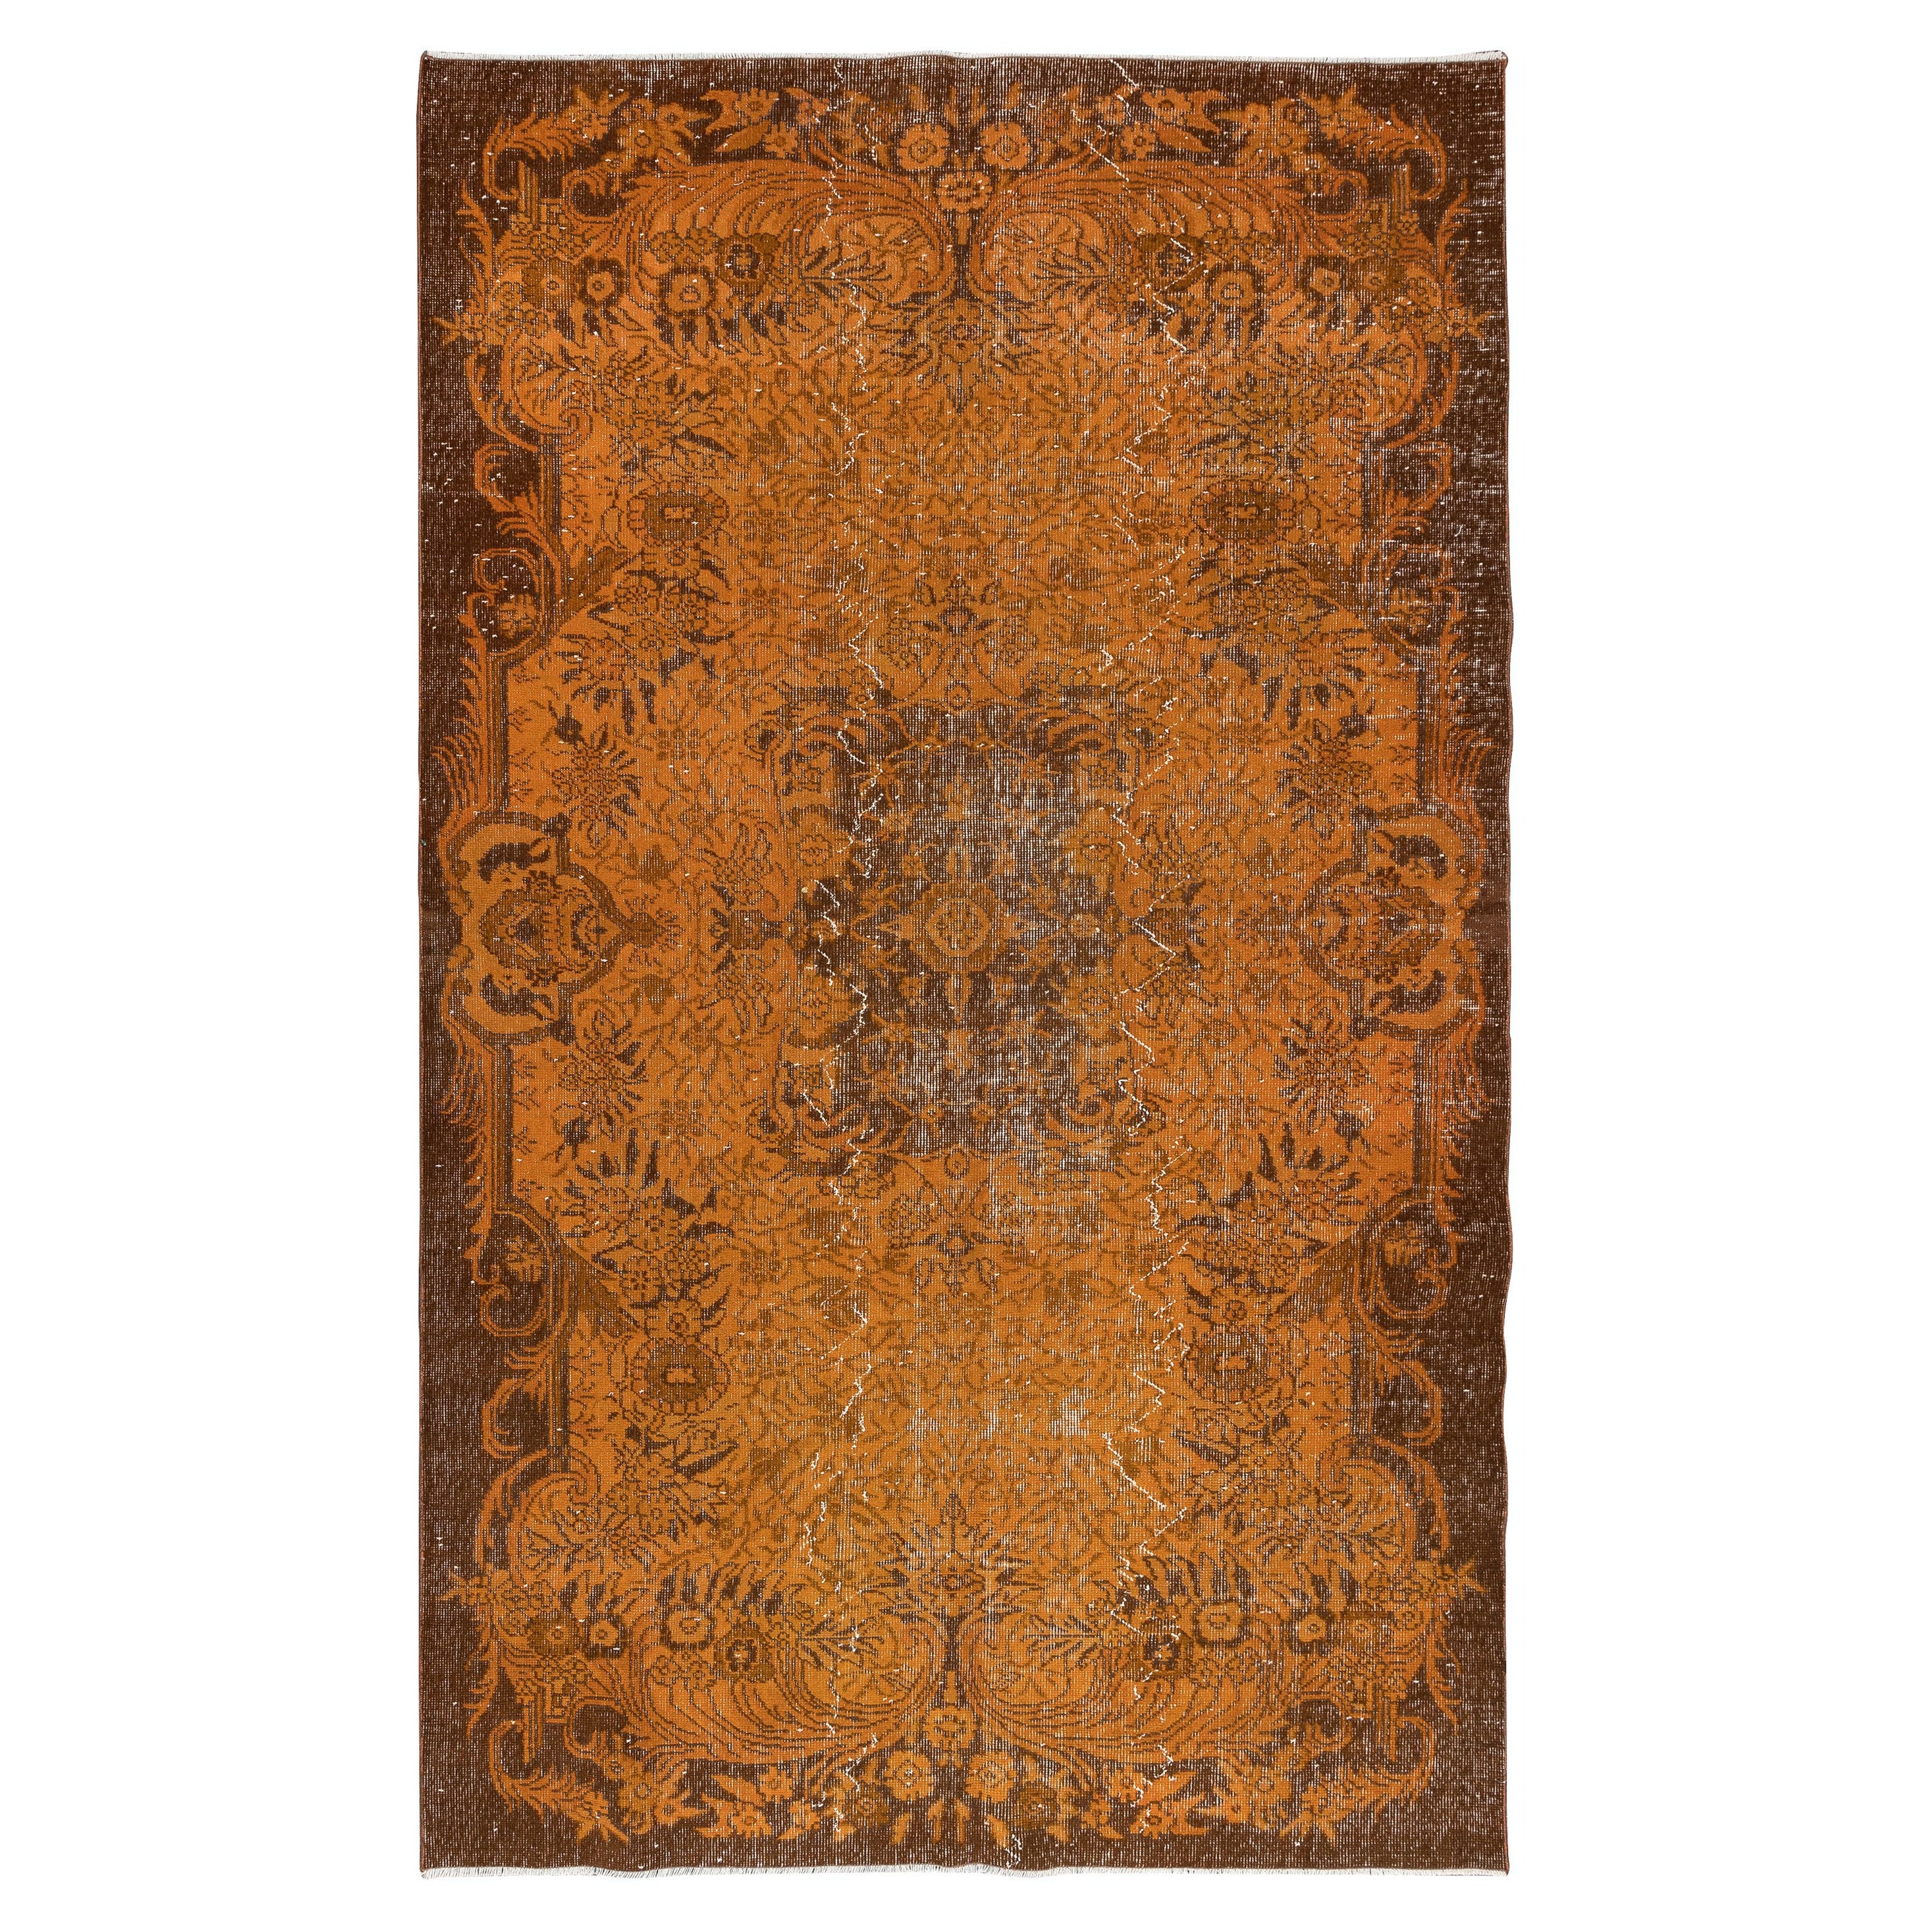 6x10 Ft Modern Handmade Rug in Orange, Vintage Turkish Carpet, Floor Covering For Sale